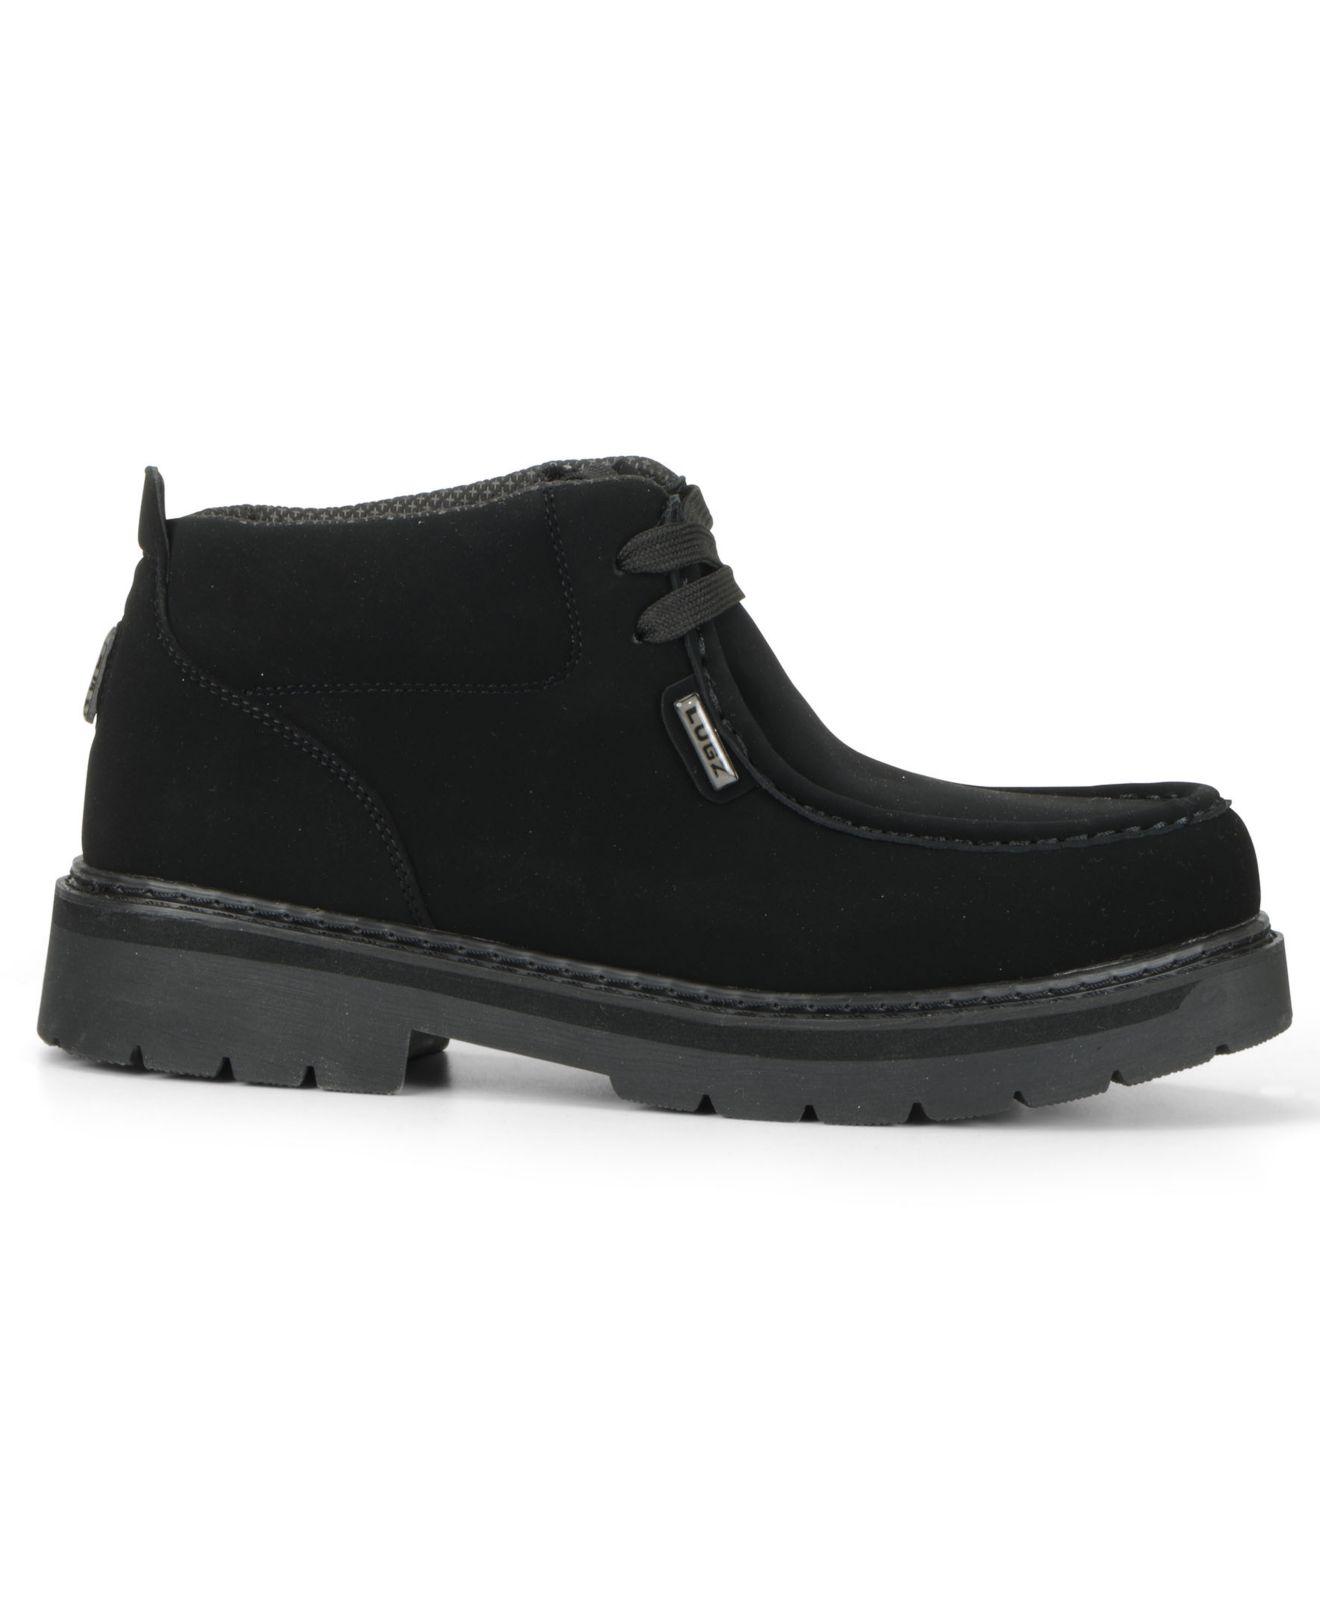 lugz black boots